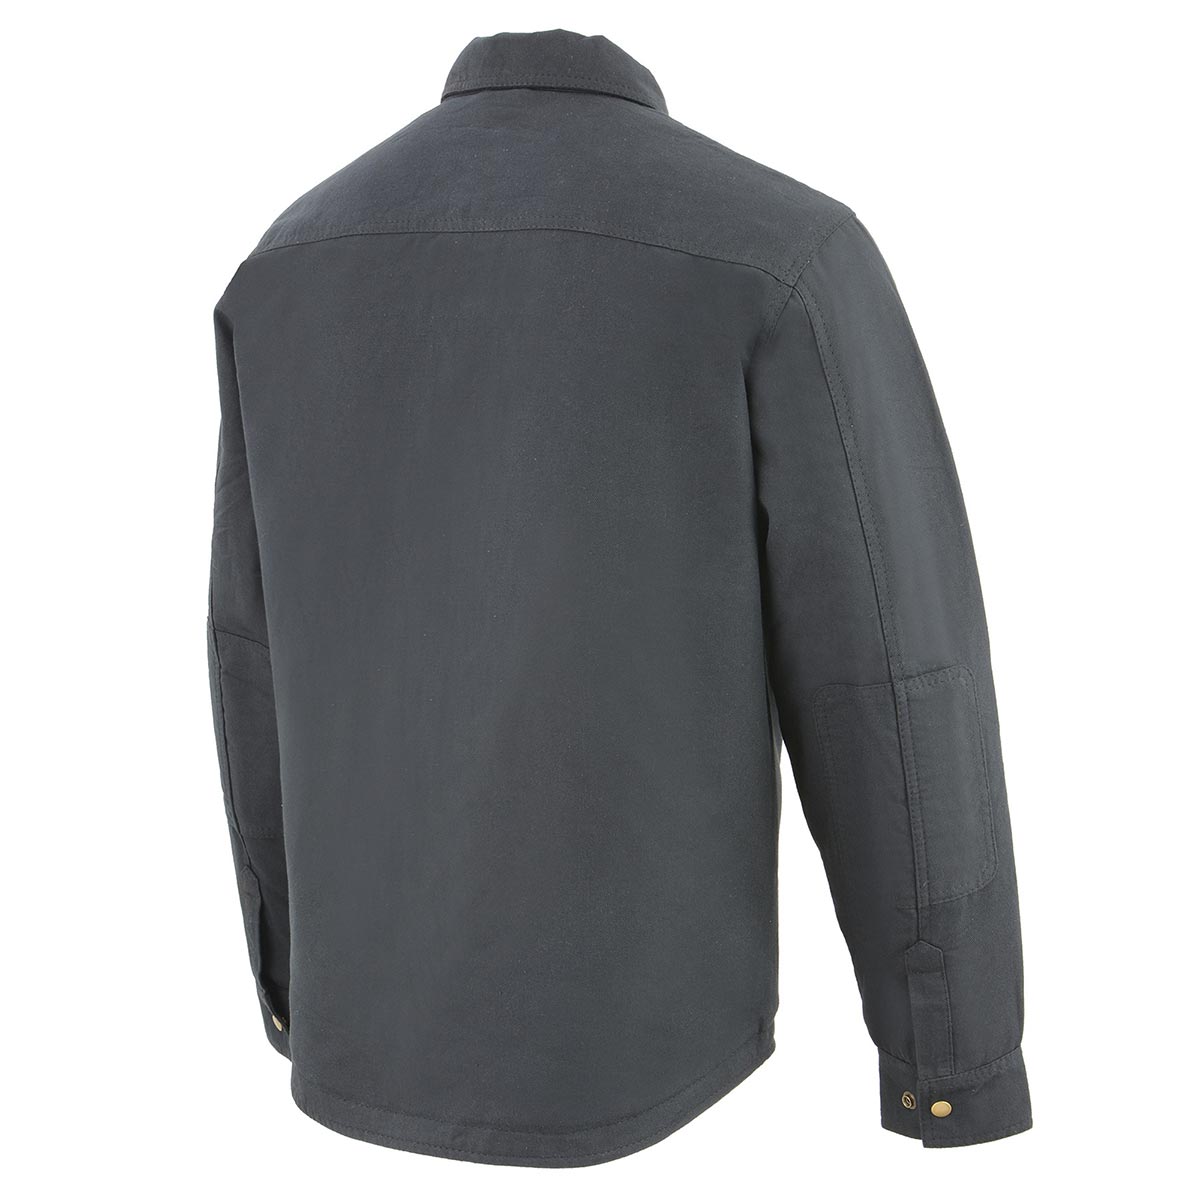 Milwaukee Leather MDM1010 Men's Black Denim Shirt Style Jacket